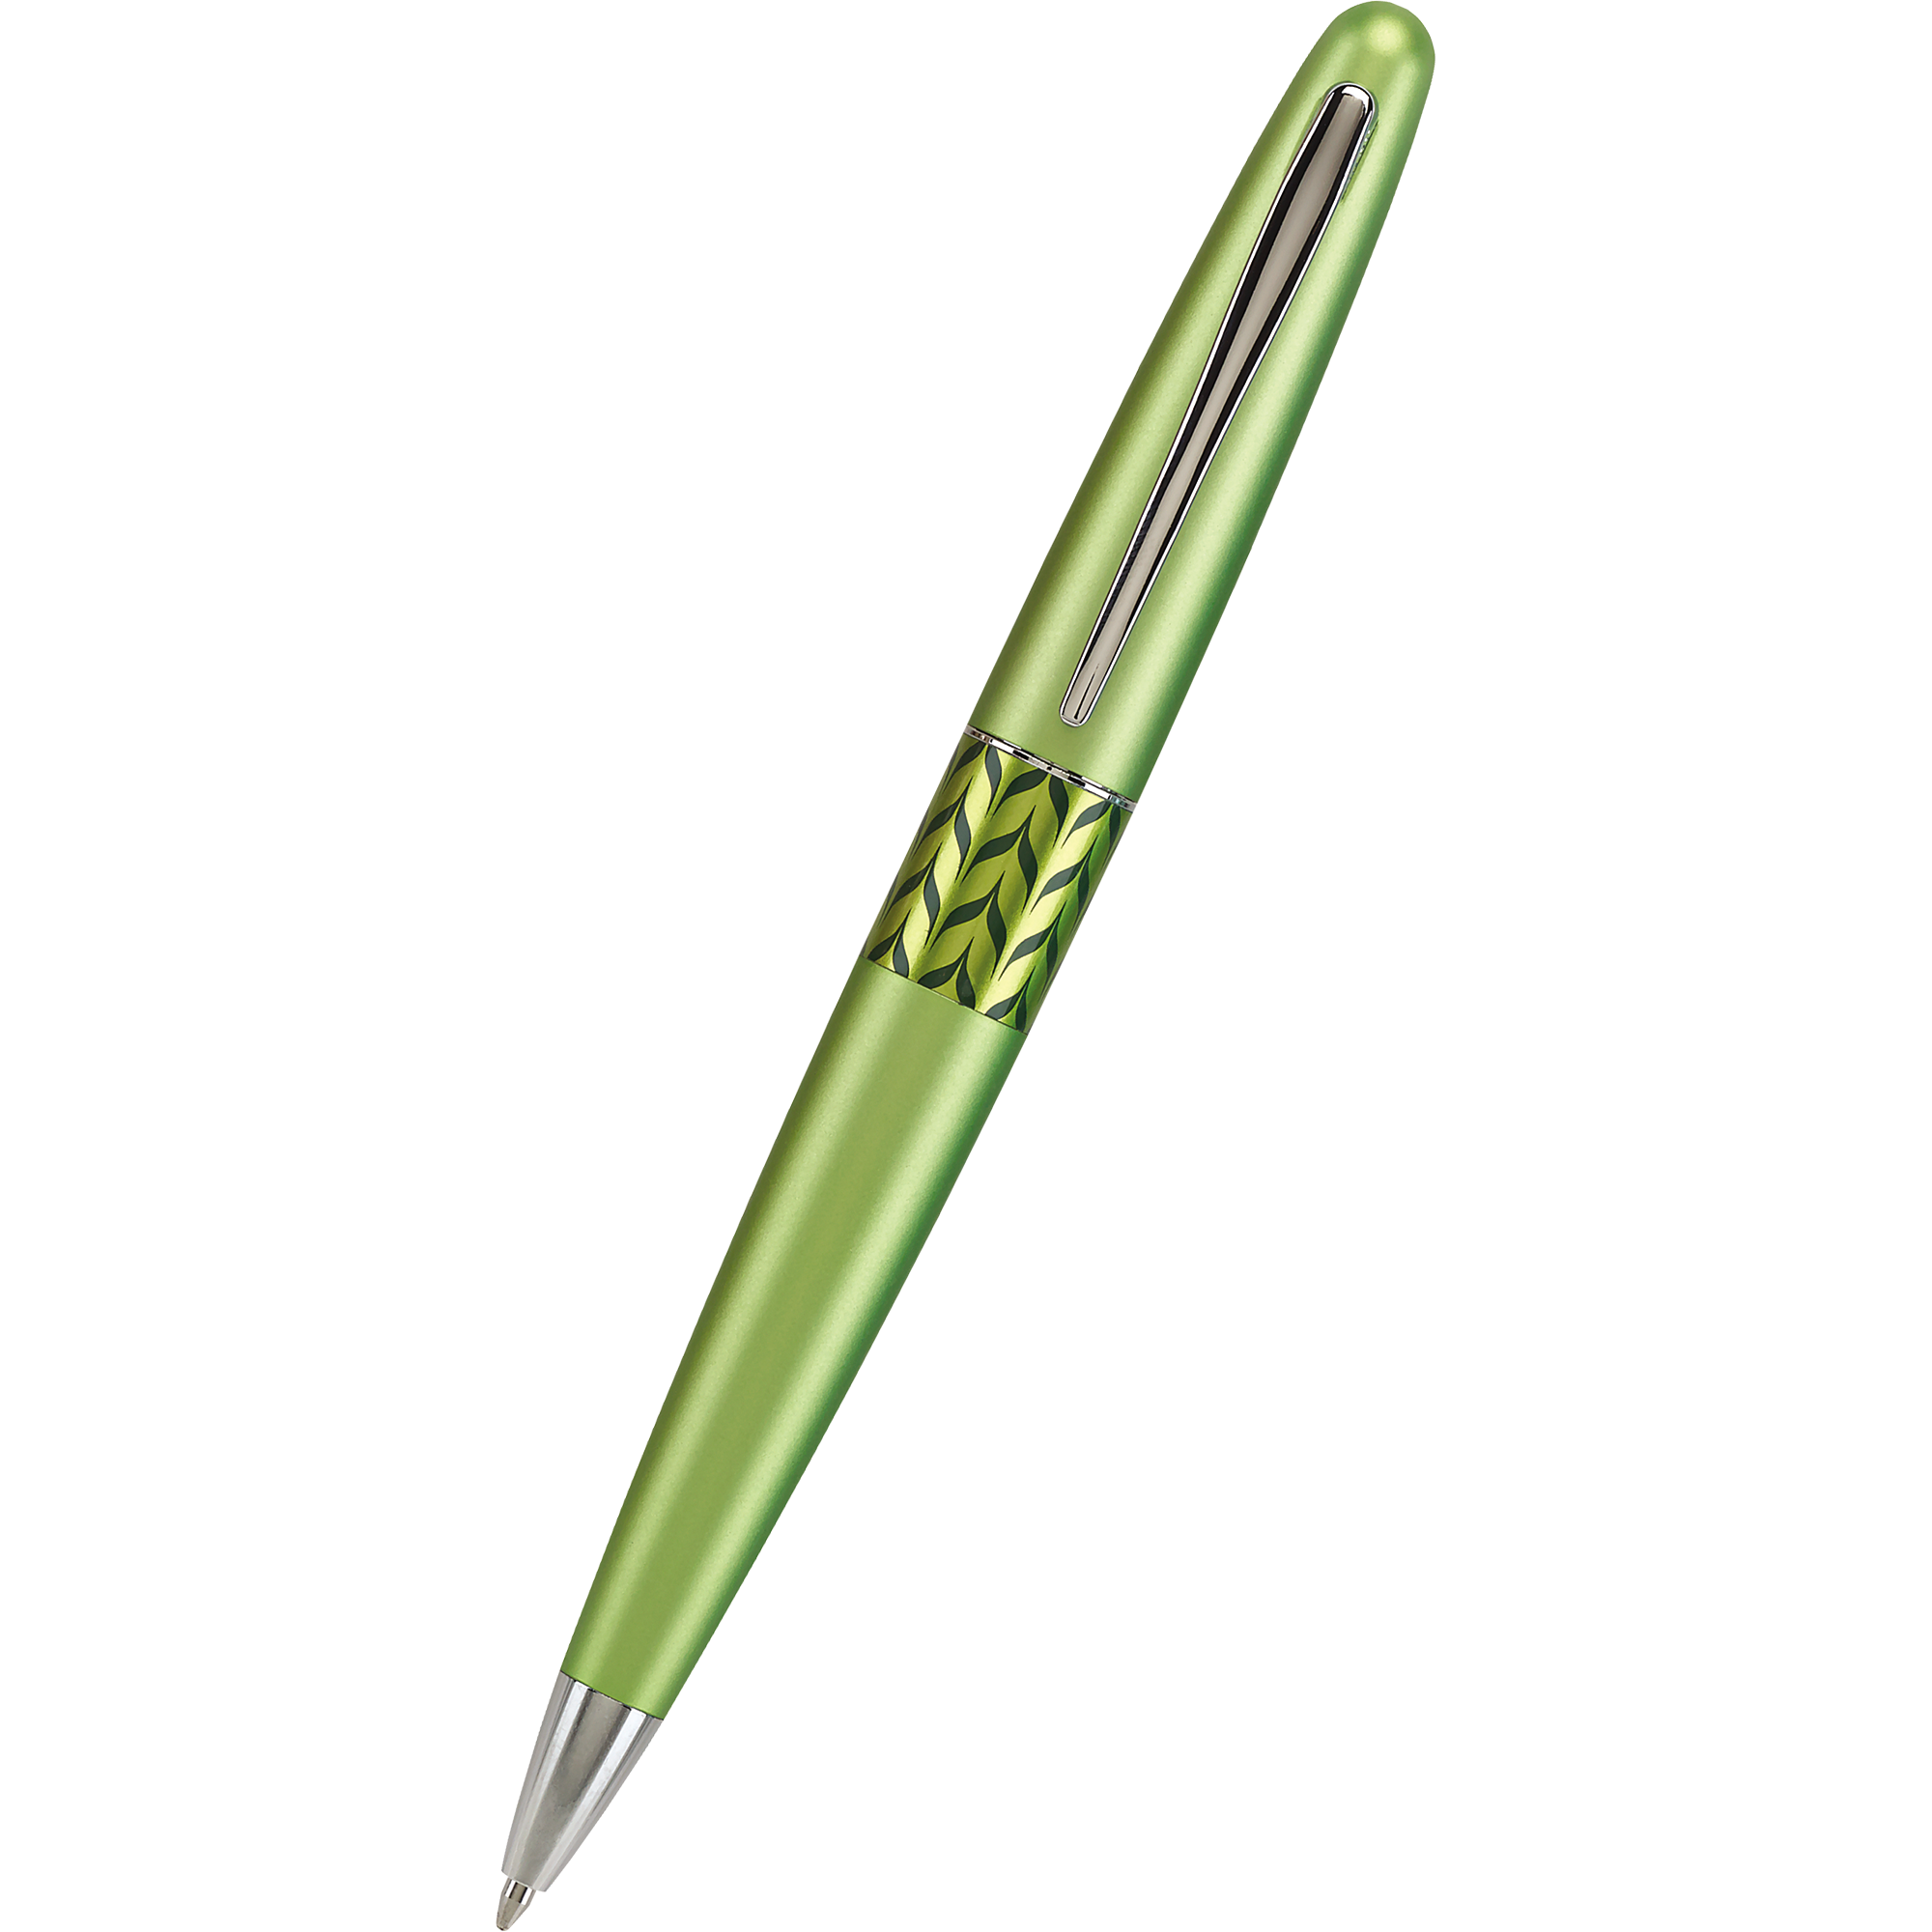 Pilot Ballpoint Pen - MR Collection - Retro Pop - Green-Pen Boutique Ltd